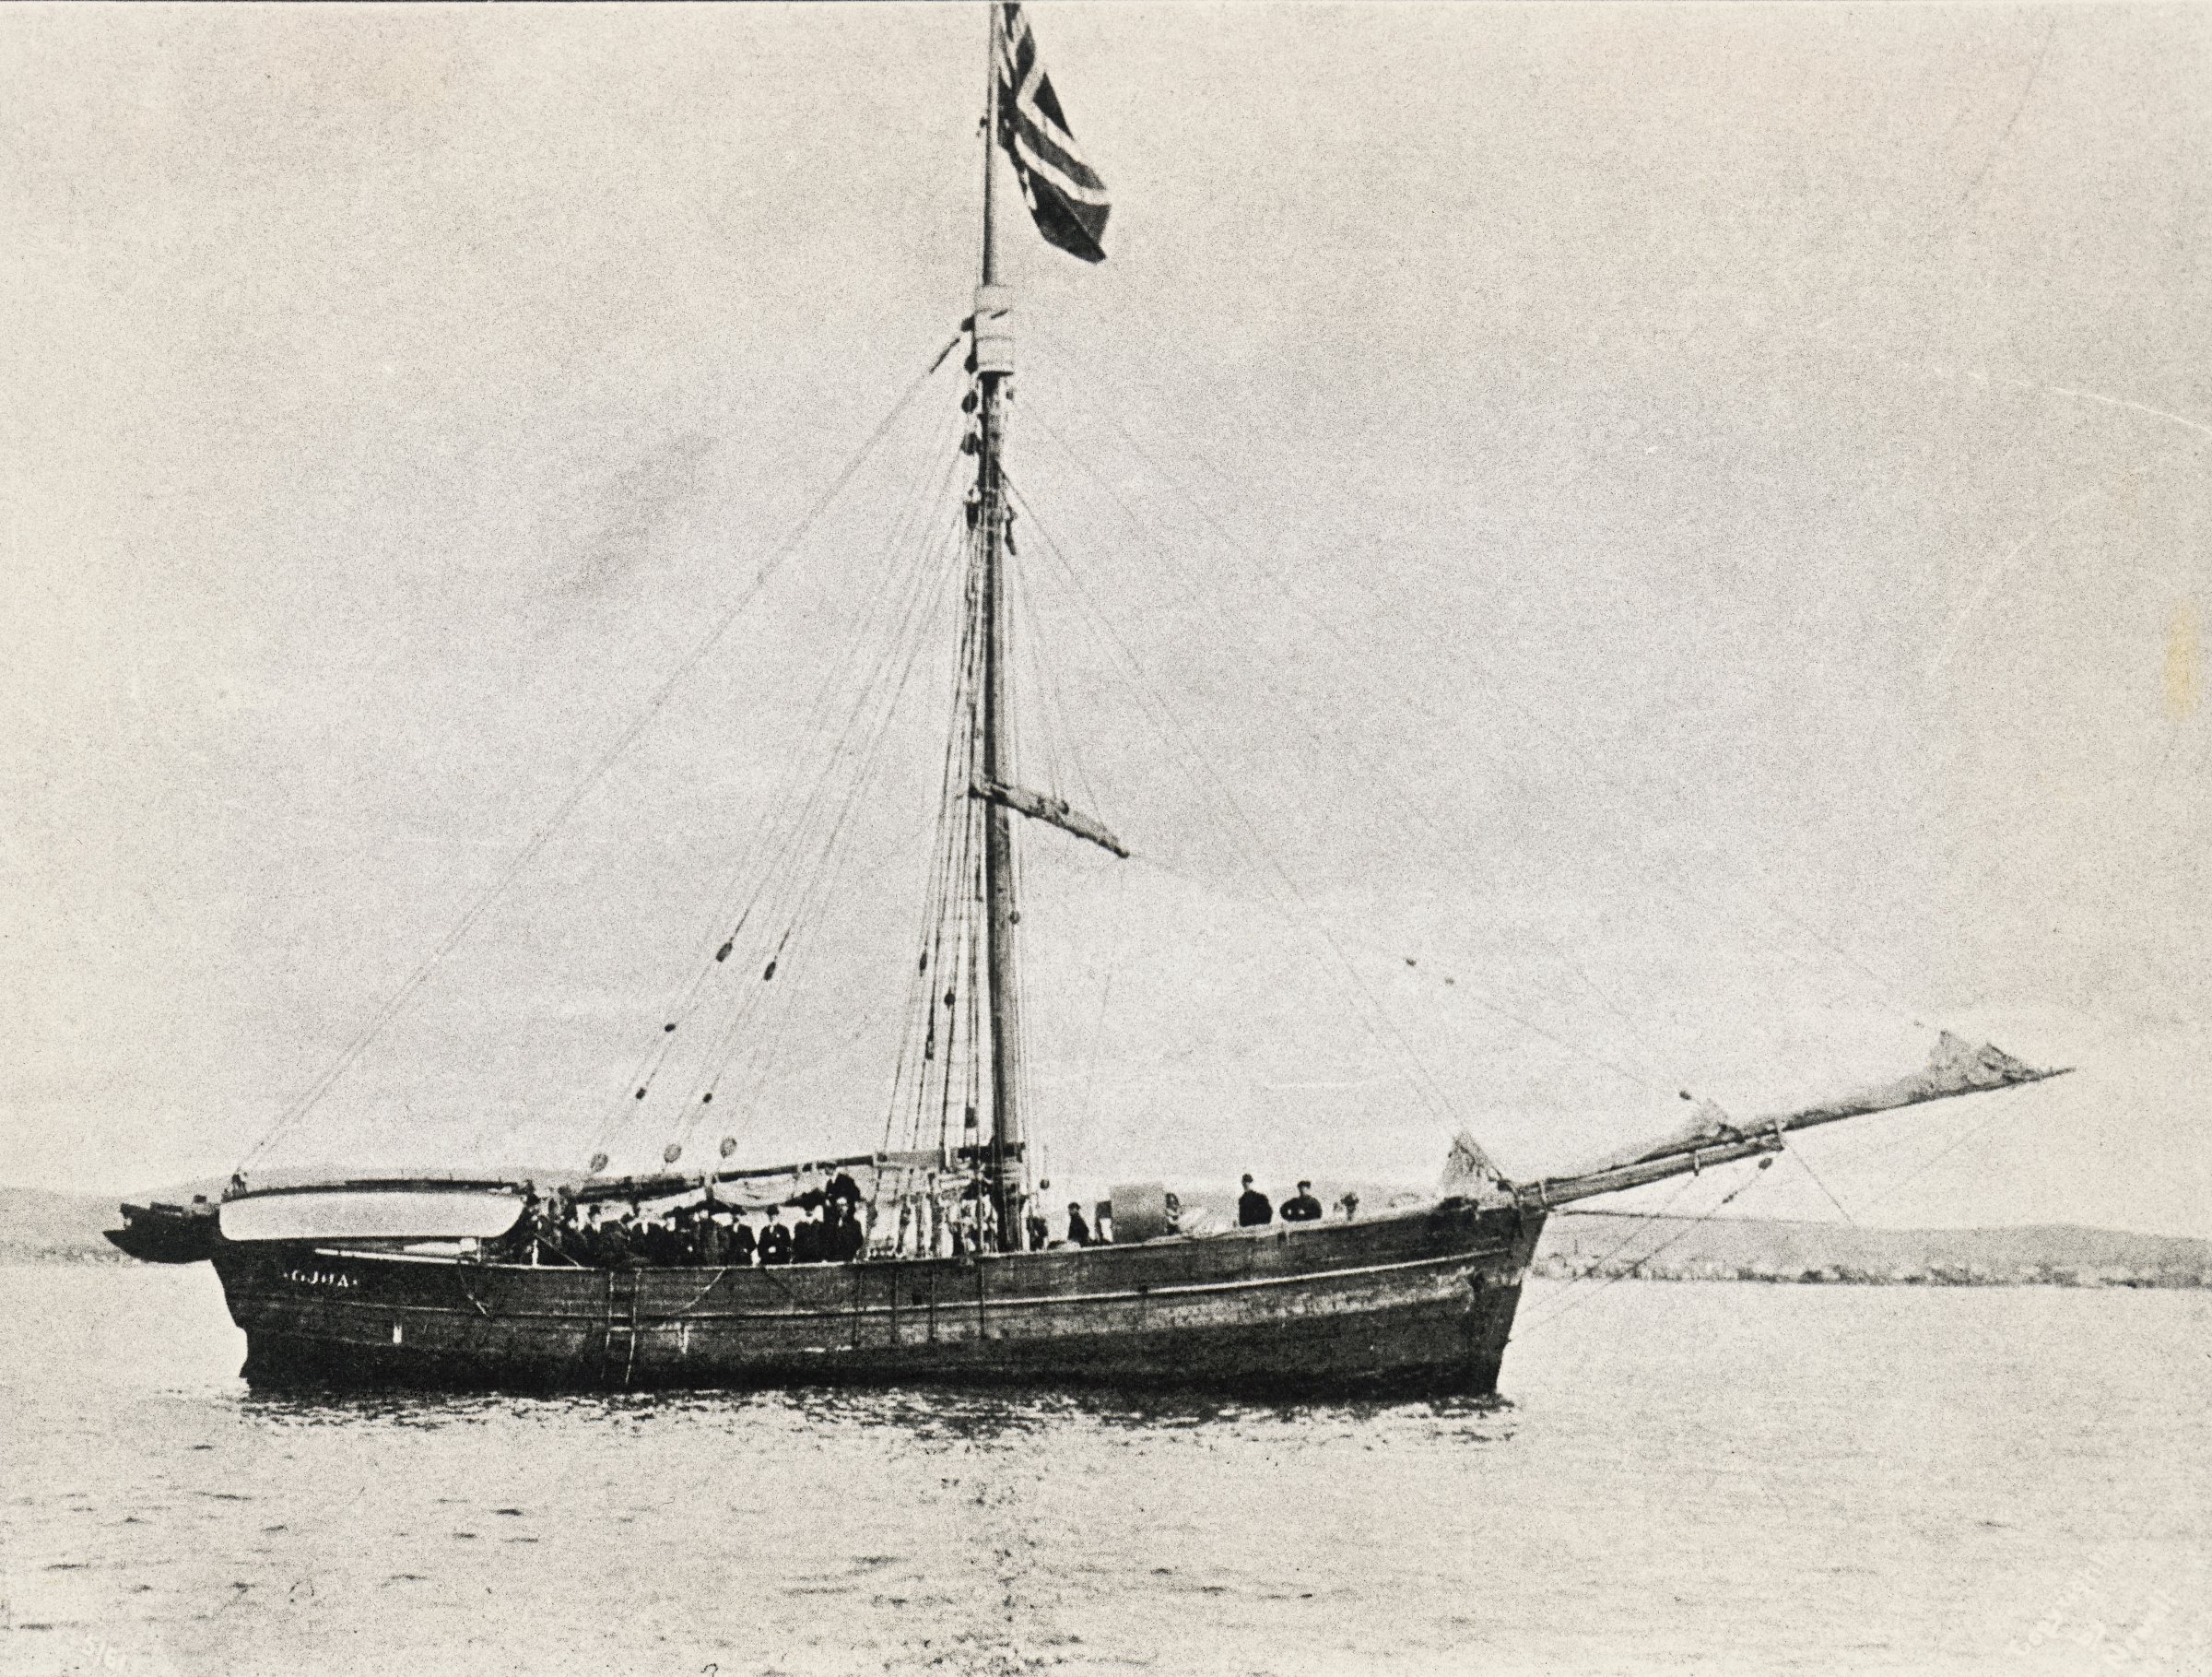 The Gjoa ship